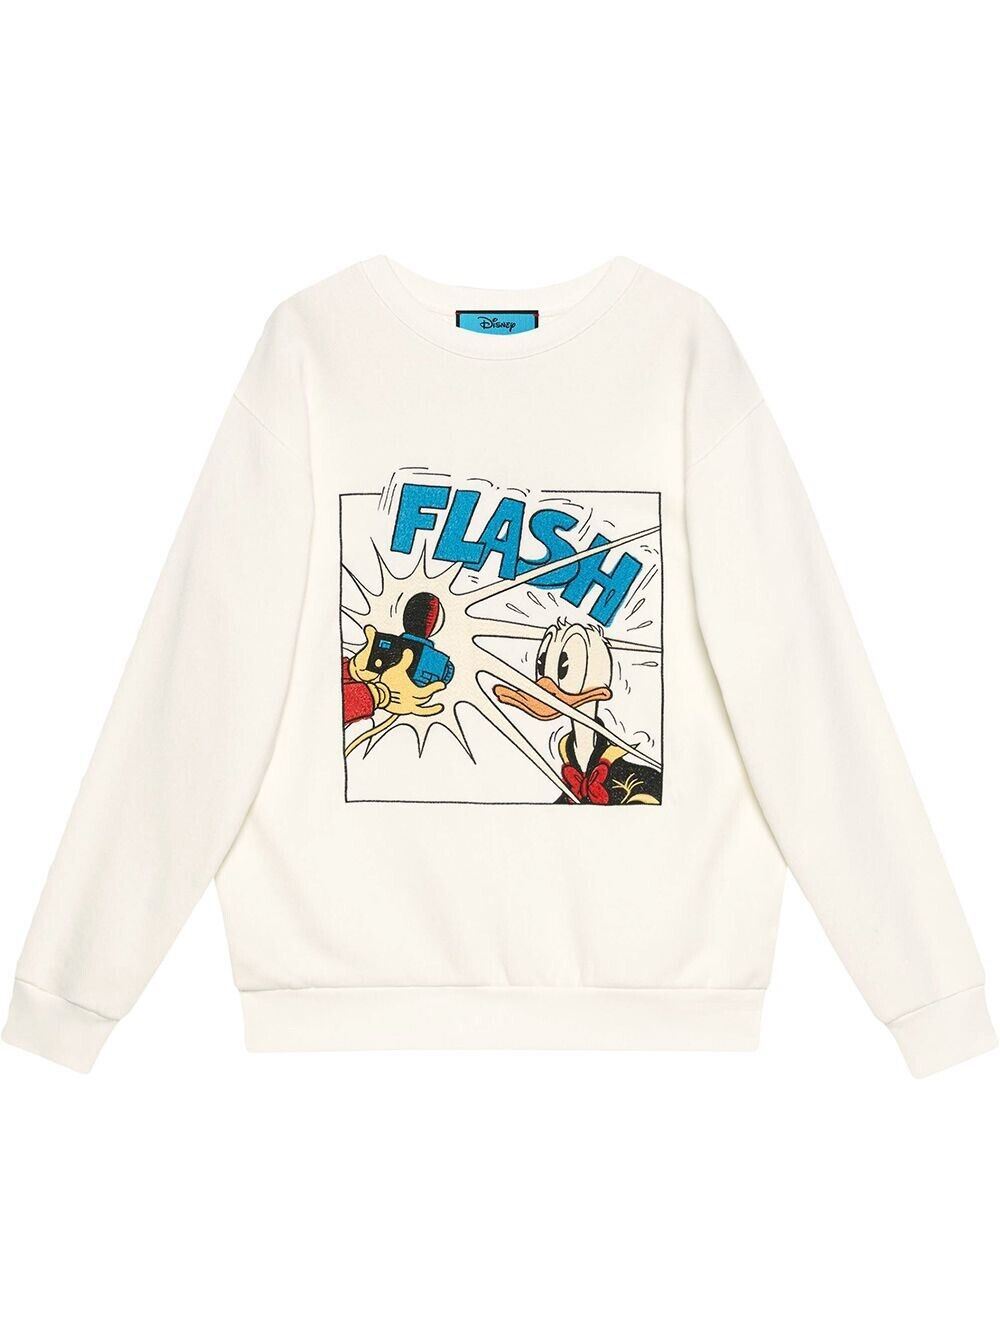 Neu mit Etikett: Gucci Donald Duck Flash Disney Sweatshirt, Weiß, Größe M, 617964, Italien 